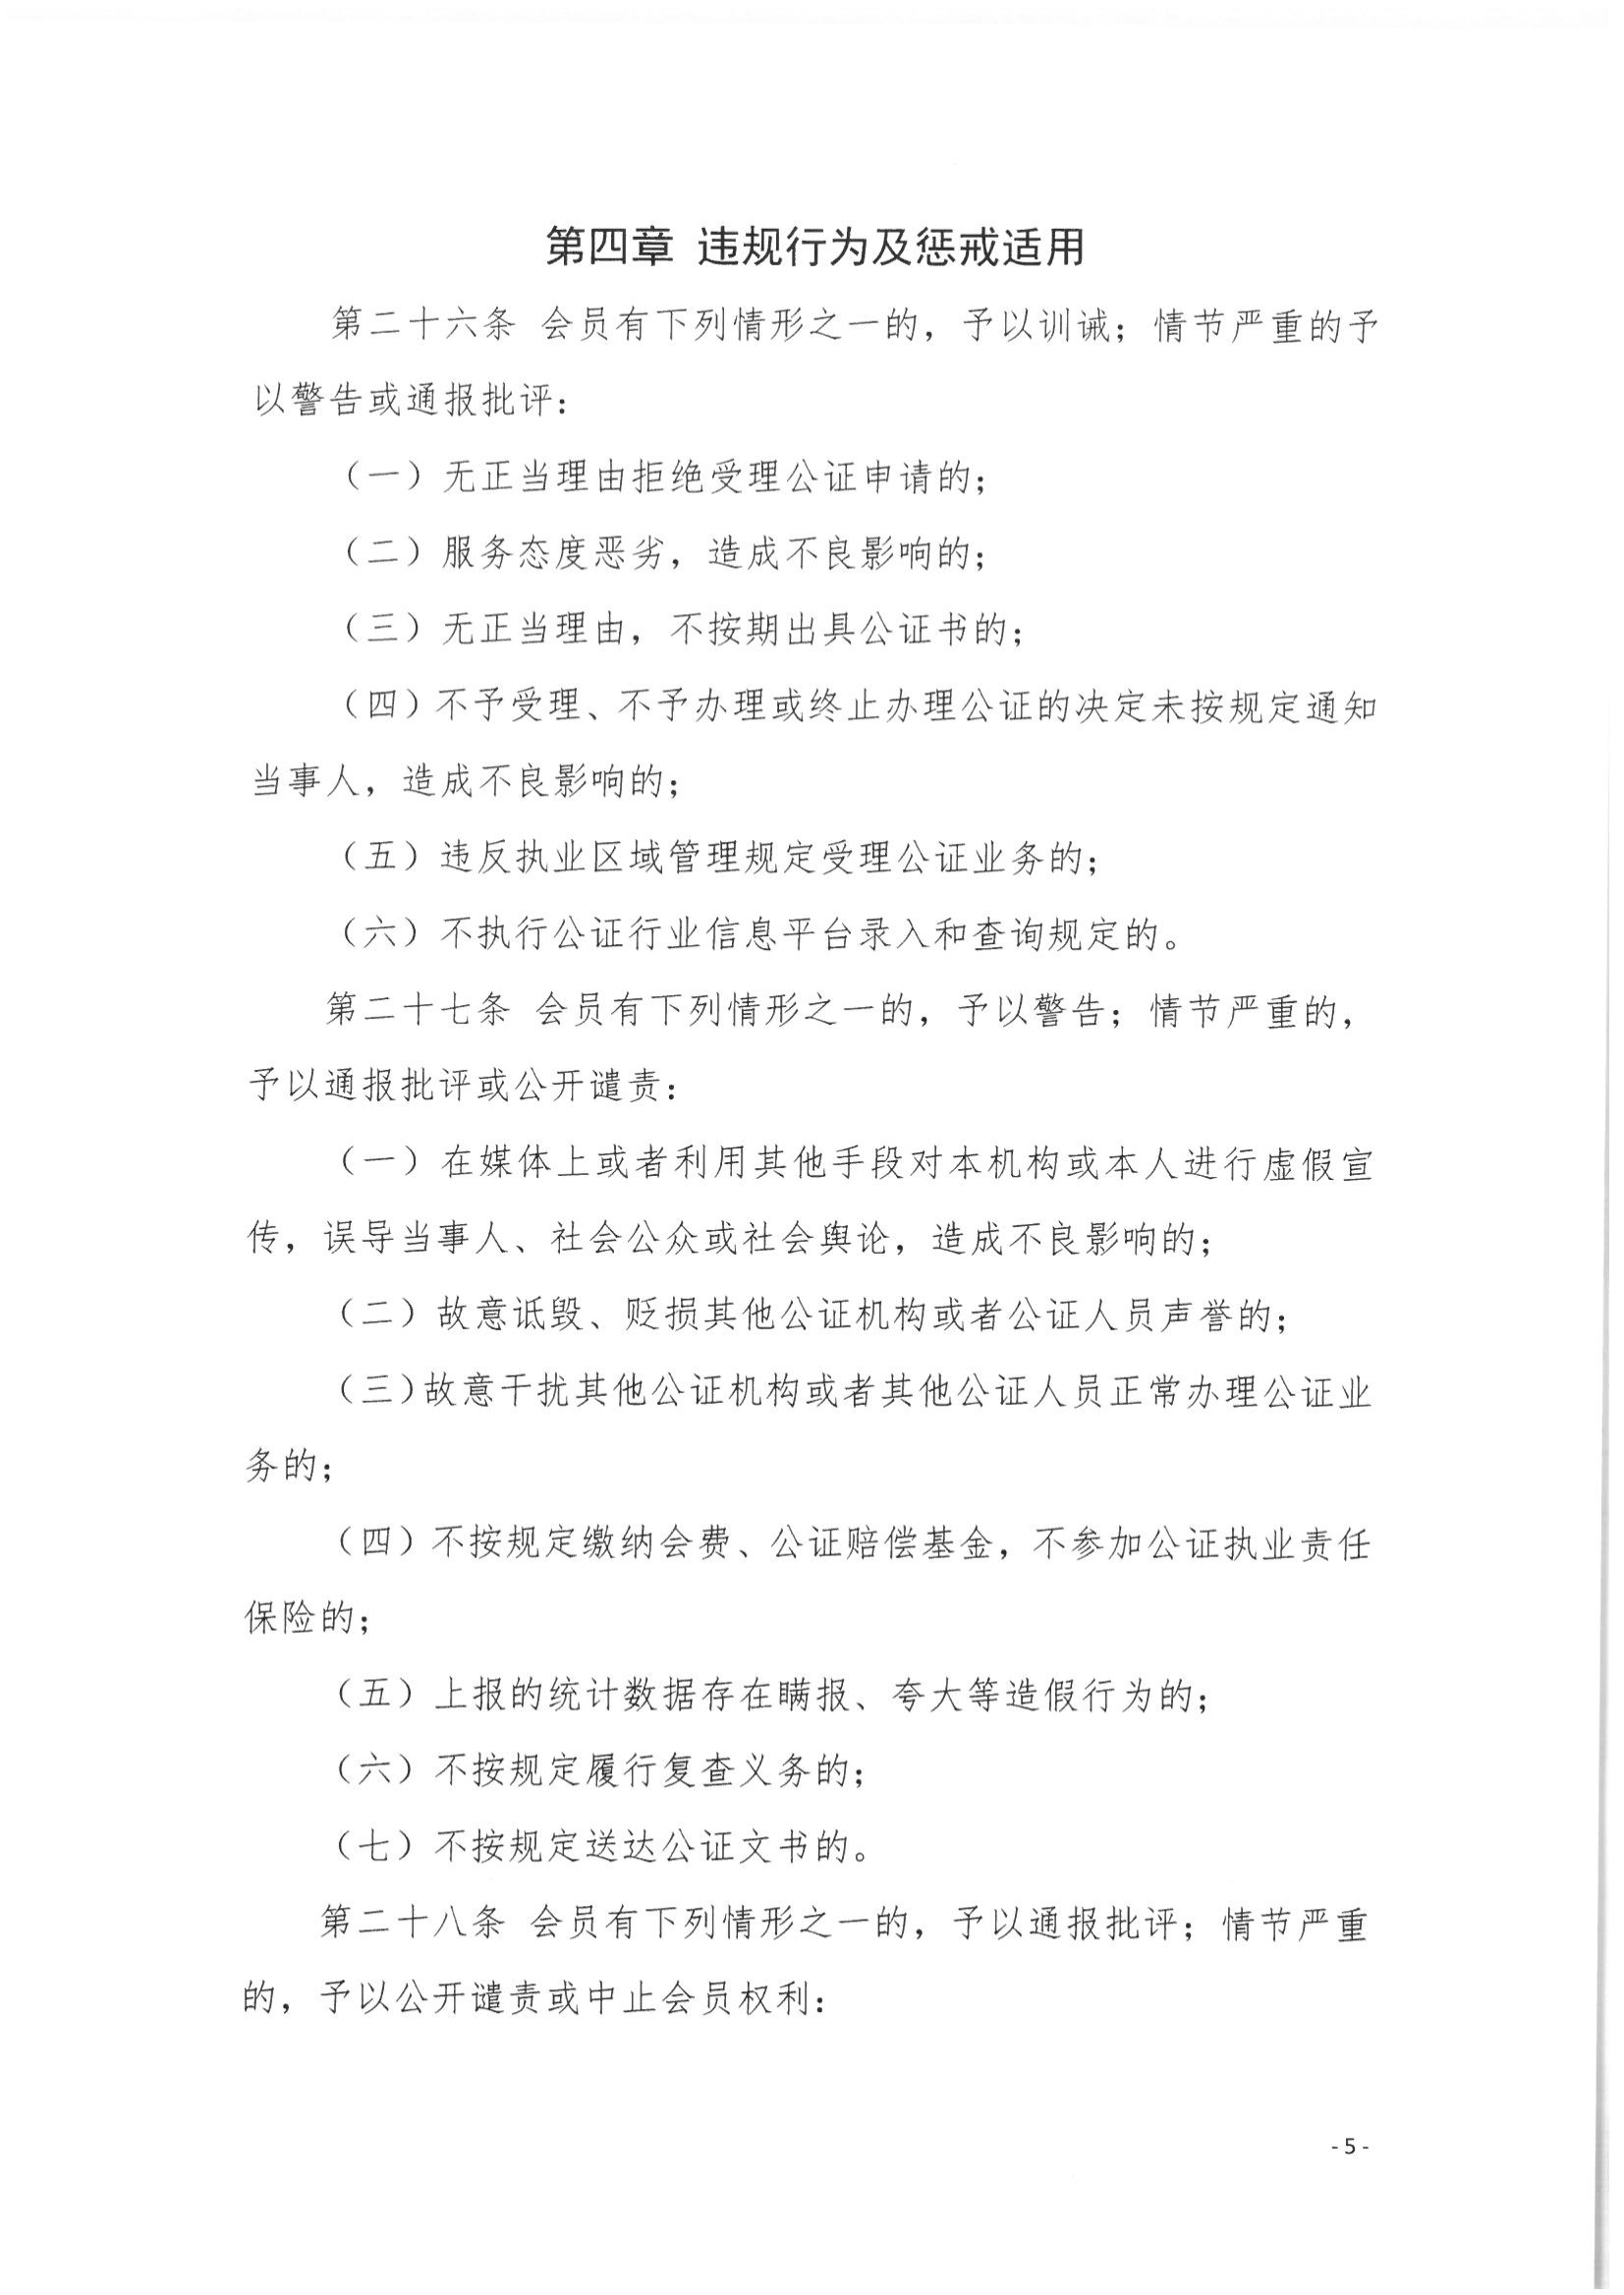 5北京市公证协会关于印发《北京市公证协会公证执业违规行为惩戒实施细则（试行）》的通知_05